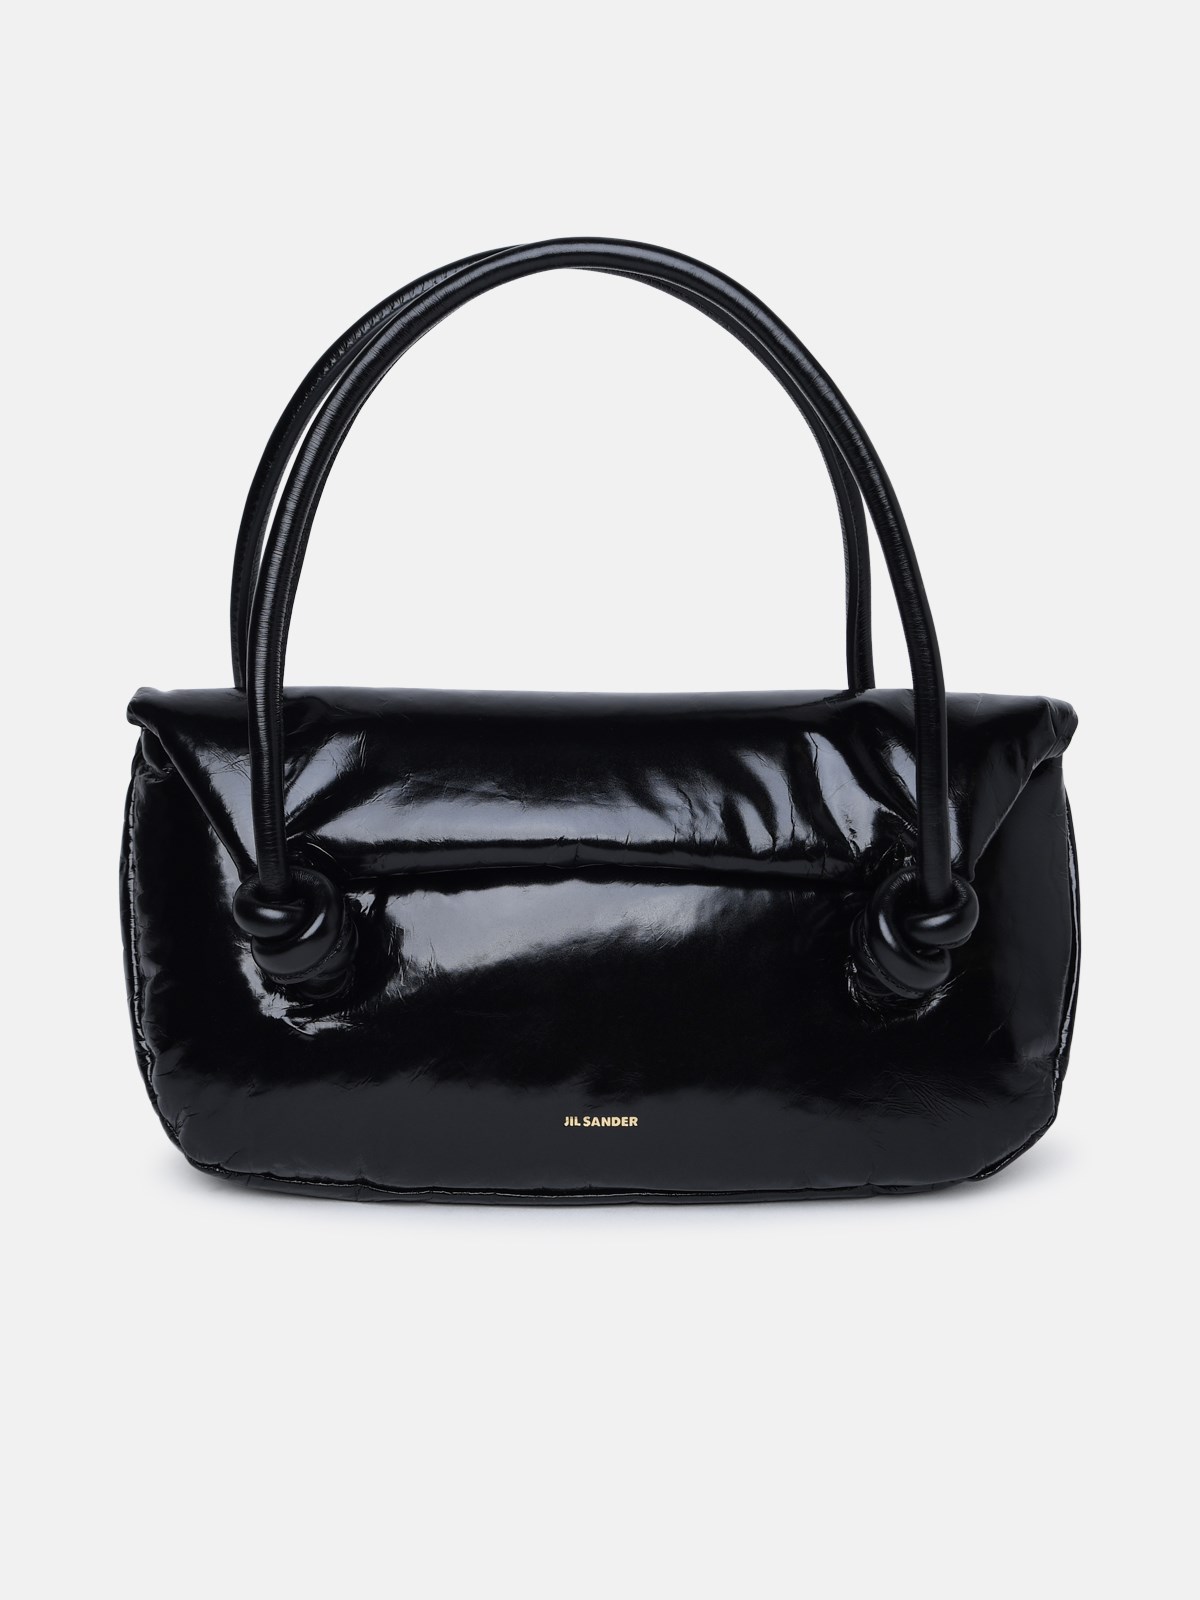 Jil Sander Black Leather Bag